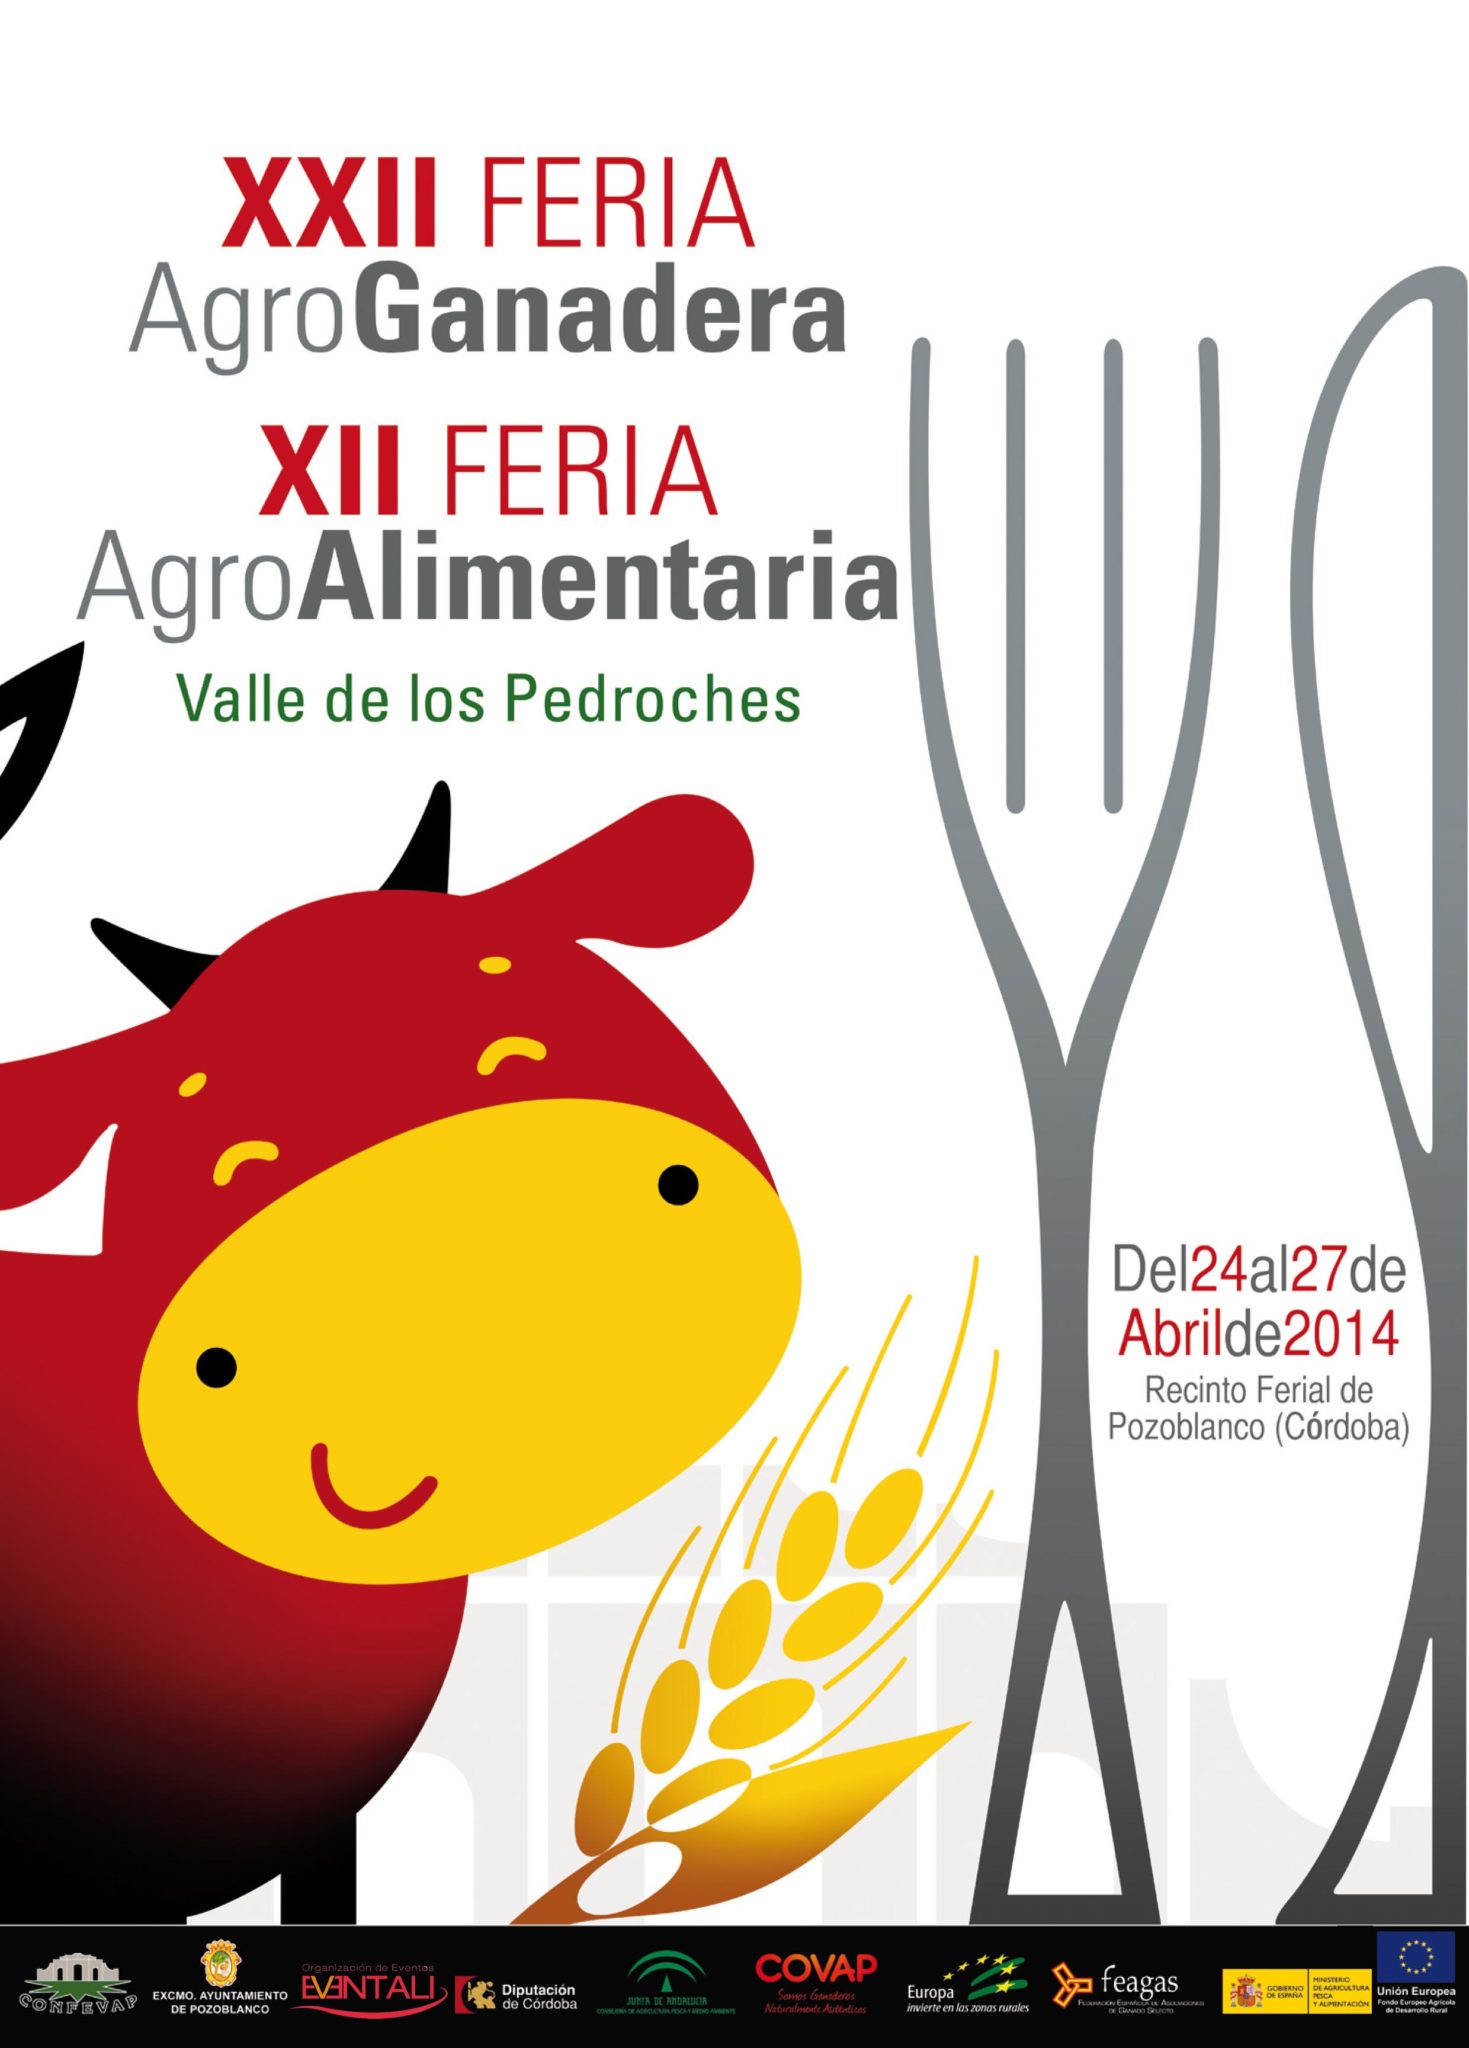 Pozoblanco, Cordoba : La XXII Feria Agroganadera del Valle de Los Pedroches se celebrará en Pozoblanco del 24 al 27 de abril